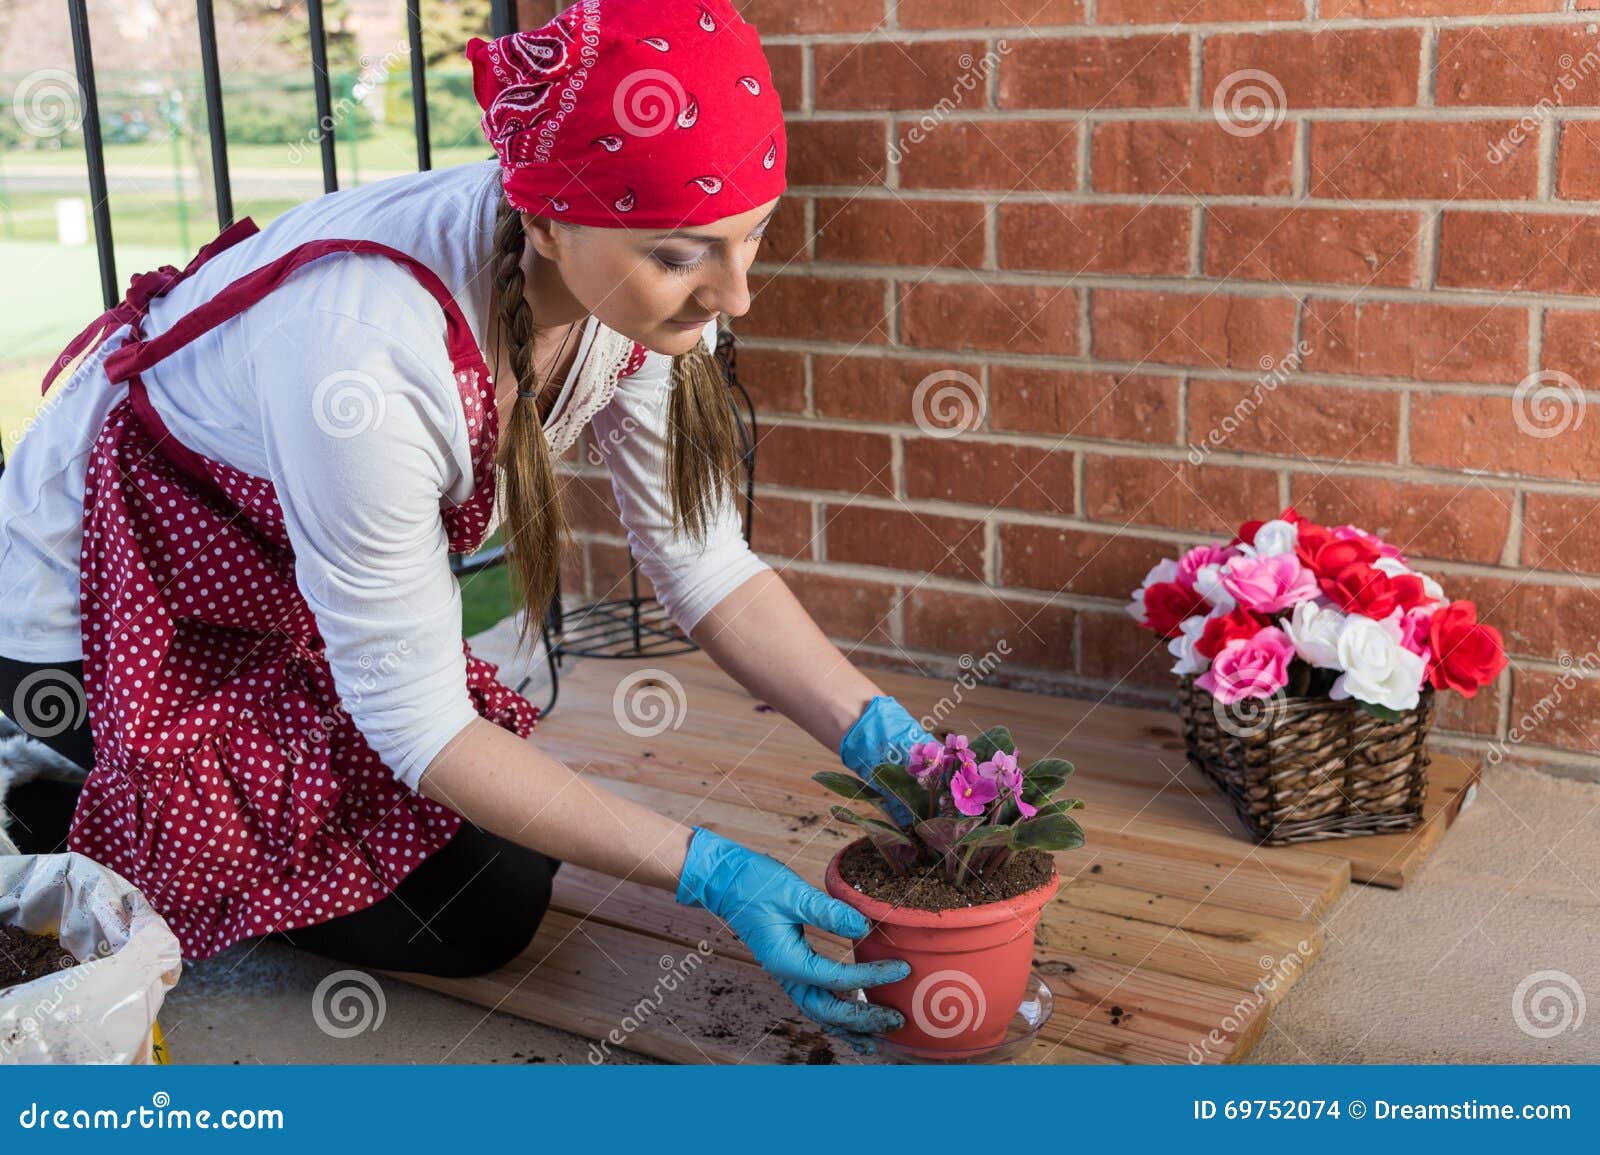 Волонтеры цветы. Девушка пересаживает цветы. Волонтера цветок. Девочек сажают на тёплый горшок профилактика. Девочка пересаживает цветок на газете.